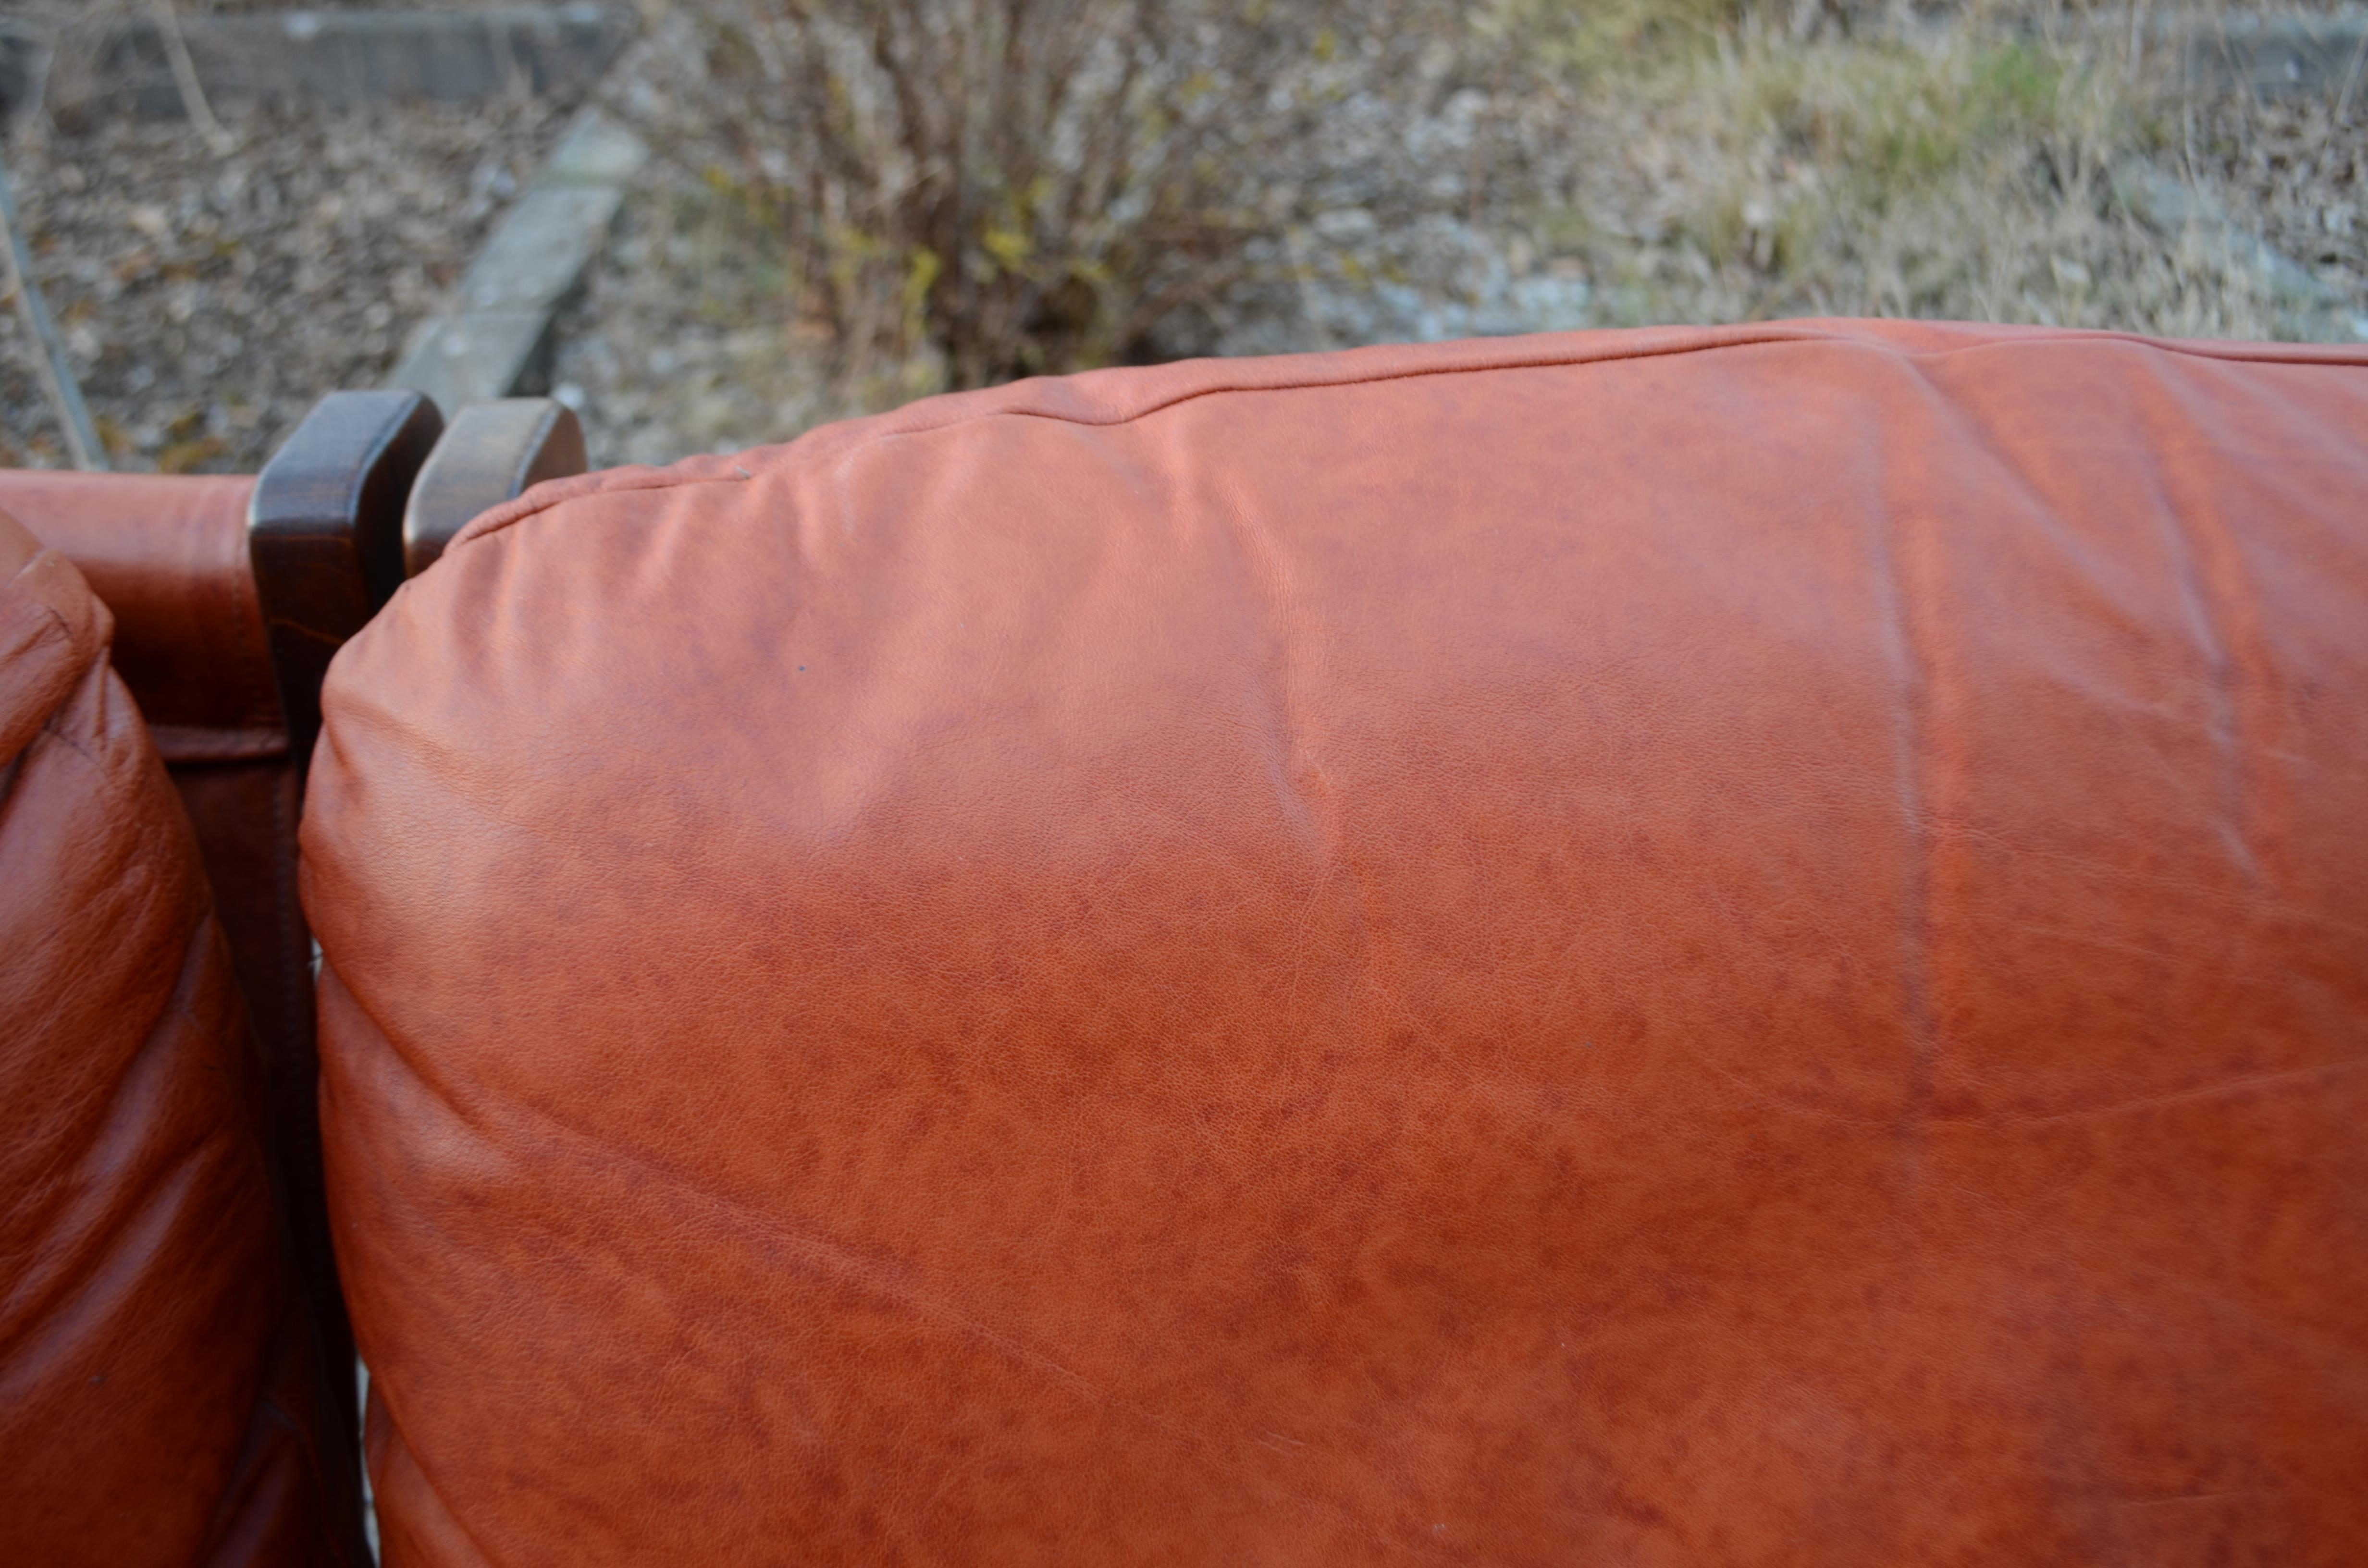 Dreipunkt International Vintage Sling Modular Cognac Leather Sectional Sofa  For Sale 7